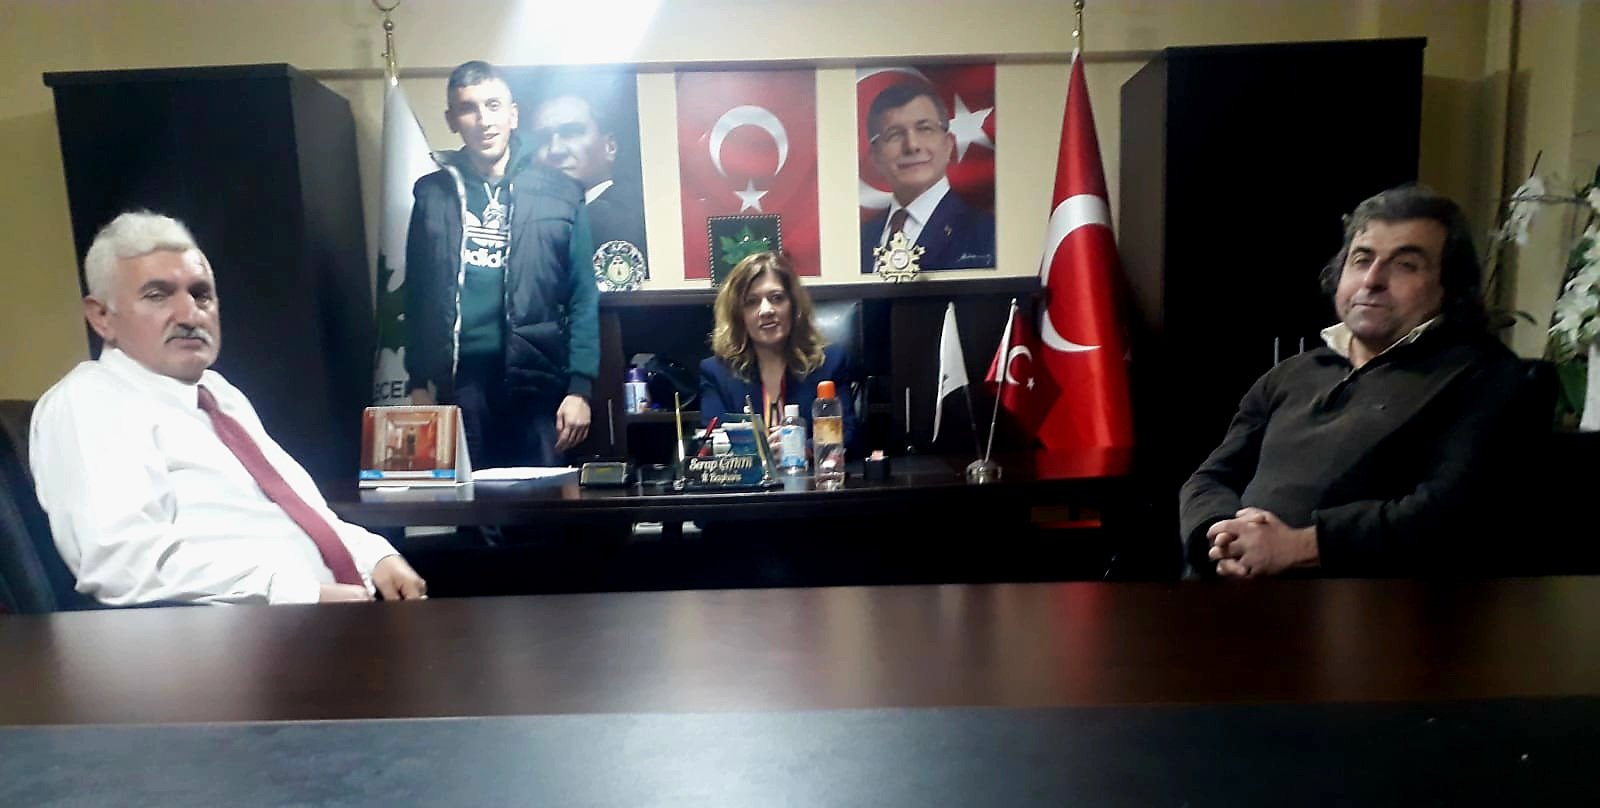 İl Başkanımız Serap Çakır ile tanışmak için il başkanlığımıza gelen ve üye kaydını da gerçekleştirdiğimiz Turhan beye ziyaretinden, Gelecek Partisi'ni tercihinden dolayı birkez daha teşekkür ediyoruz.